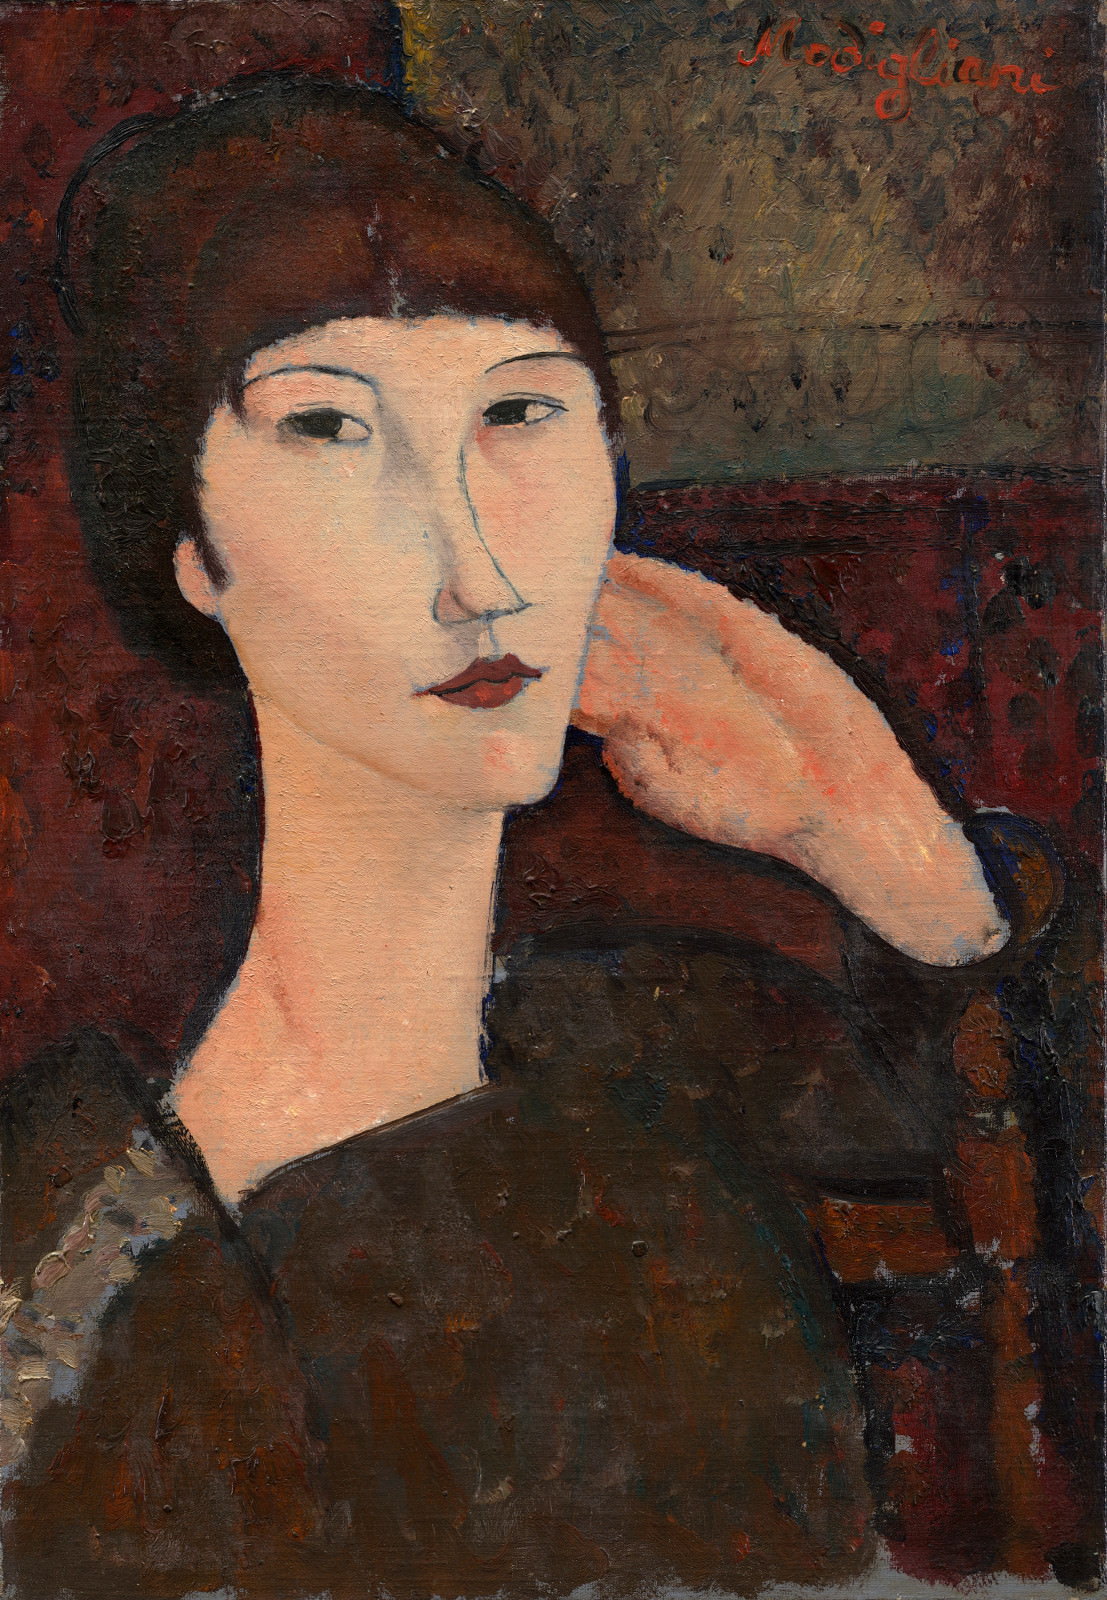 Σύκο.. 8 - Adrienne (Γυναίκα με κτυπήματα), Αμεντέο Μοντιλιάνι, 1917, Λίνο λάδι σε, 55.3 x 38.1 cm. Εθνική Γκαλερί τέχνης, Ουάσιγκτον. Τσέστερ Dale συλλογή.